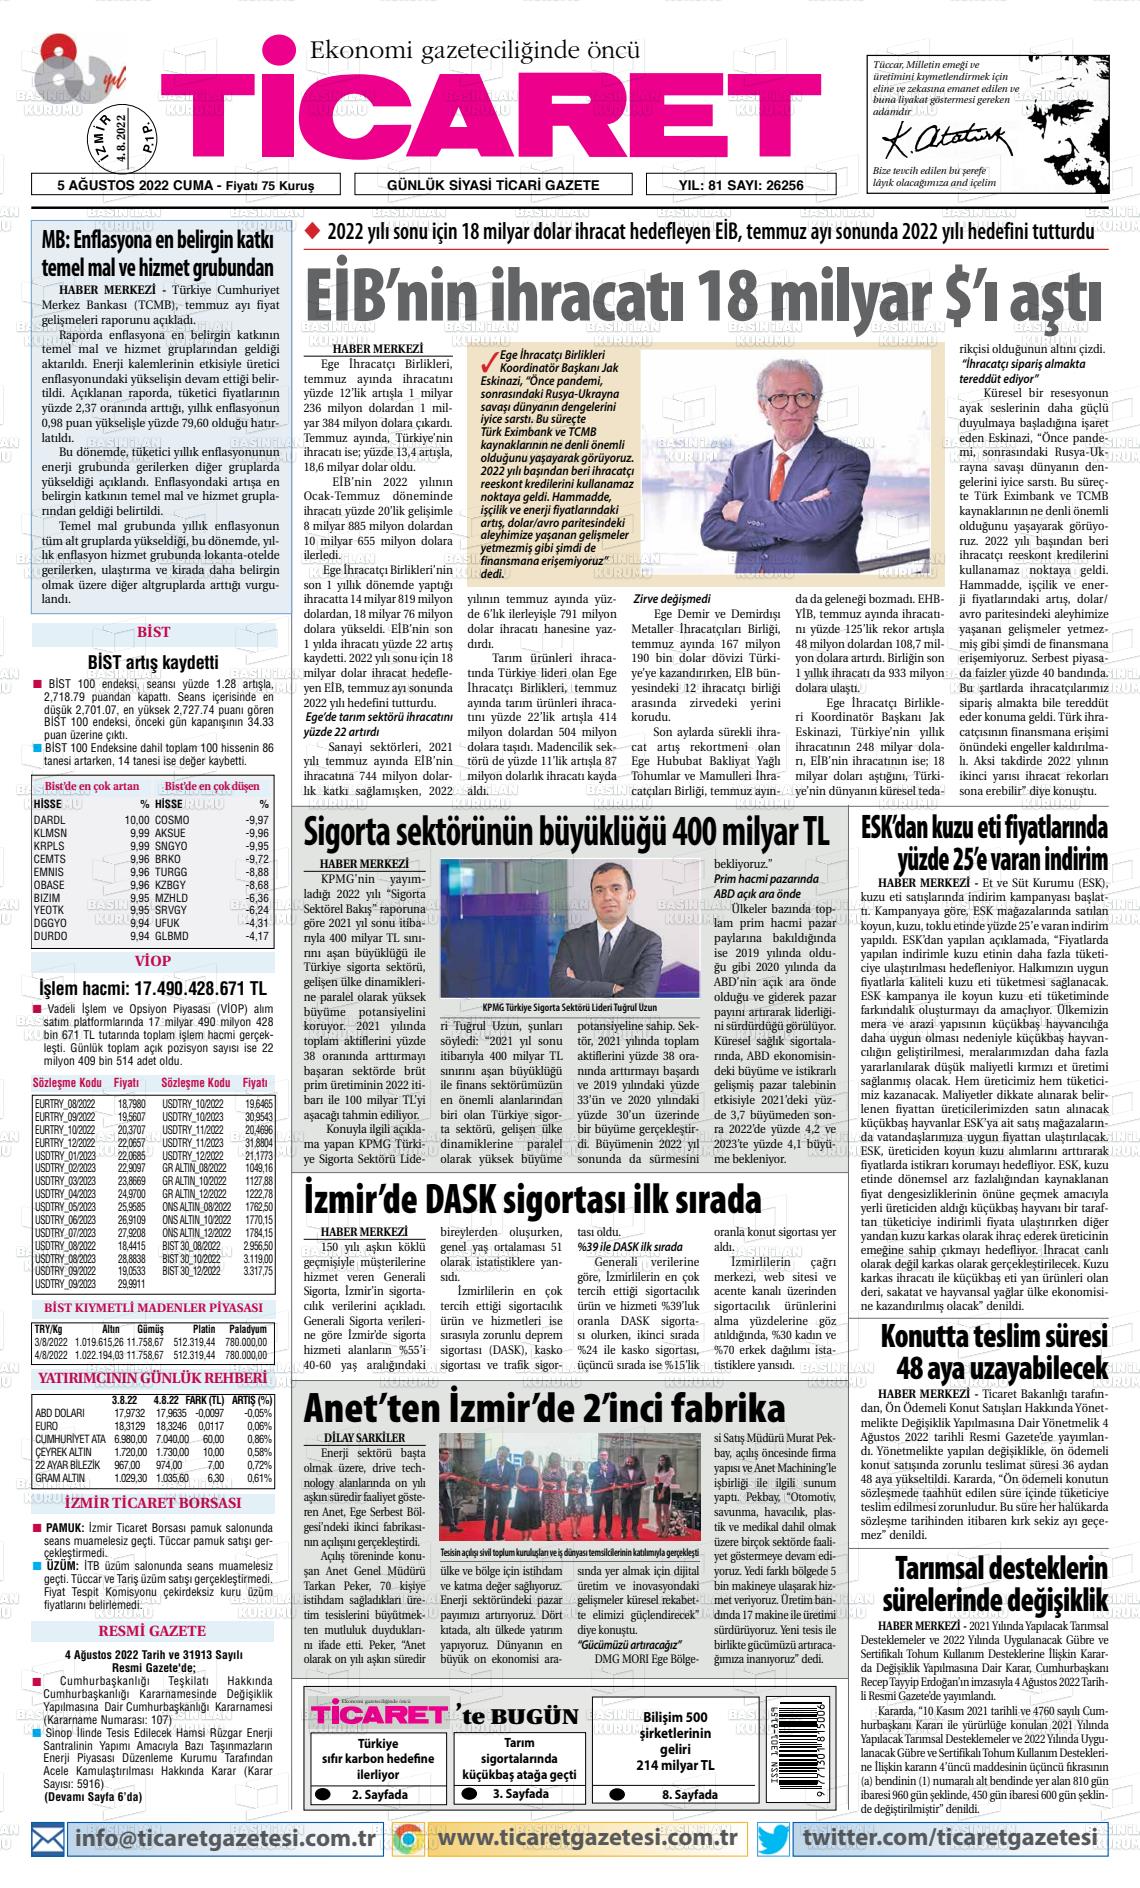 05 Ağustos 2022 Ticaret Gazete Manşeti